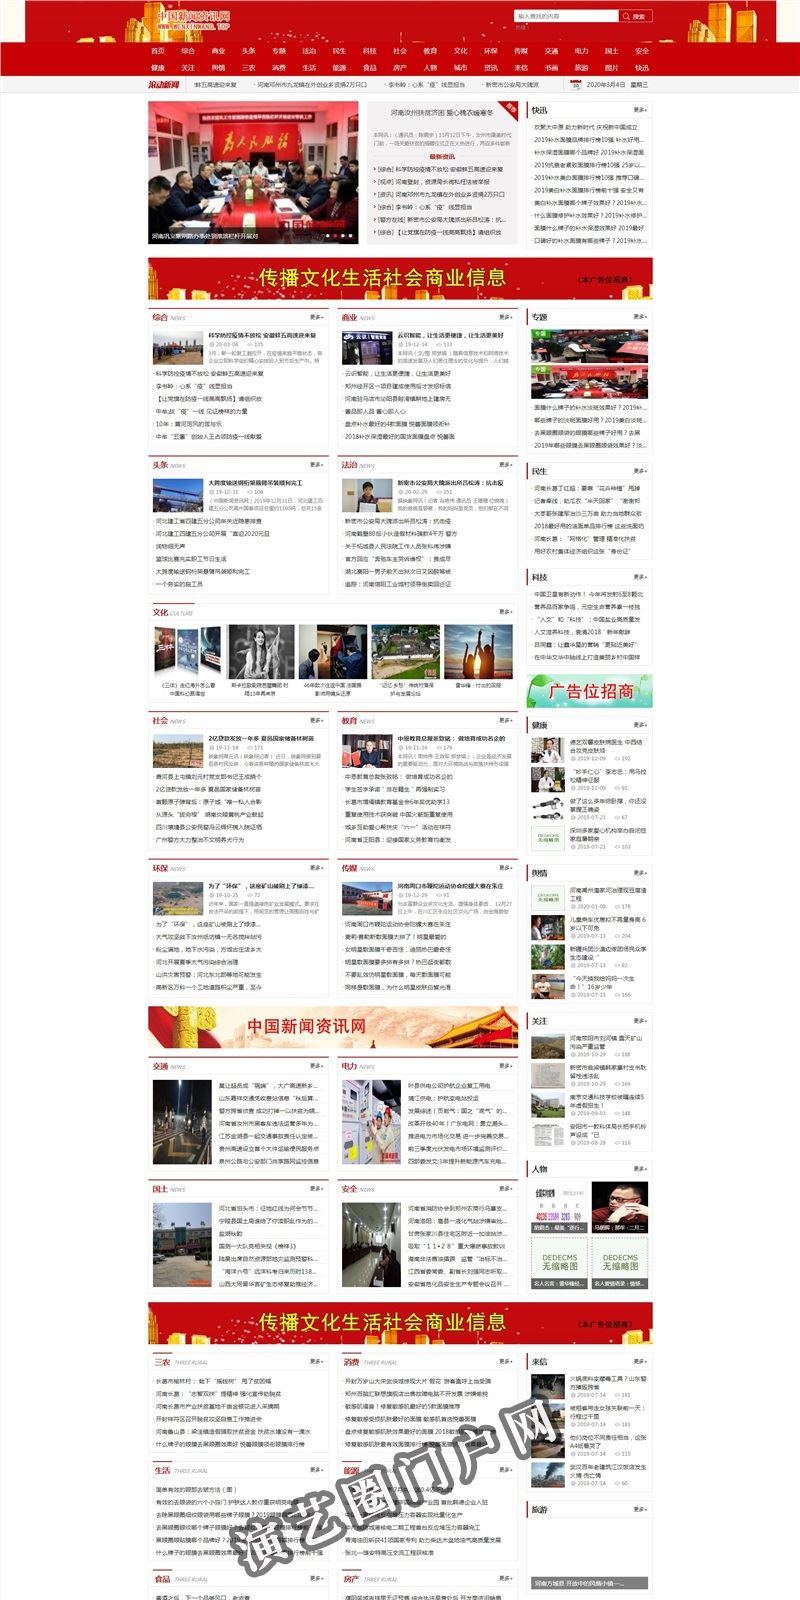 中国新闻资讯网【官网】-深度解读新闻事件 、 权威信息发布平台截图